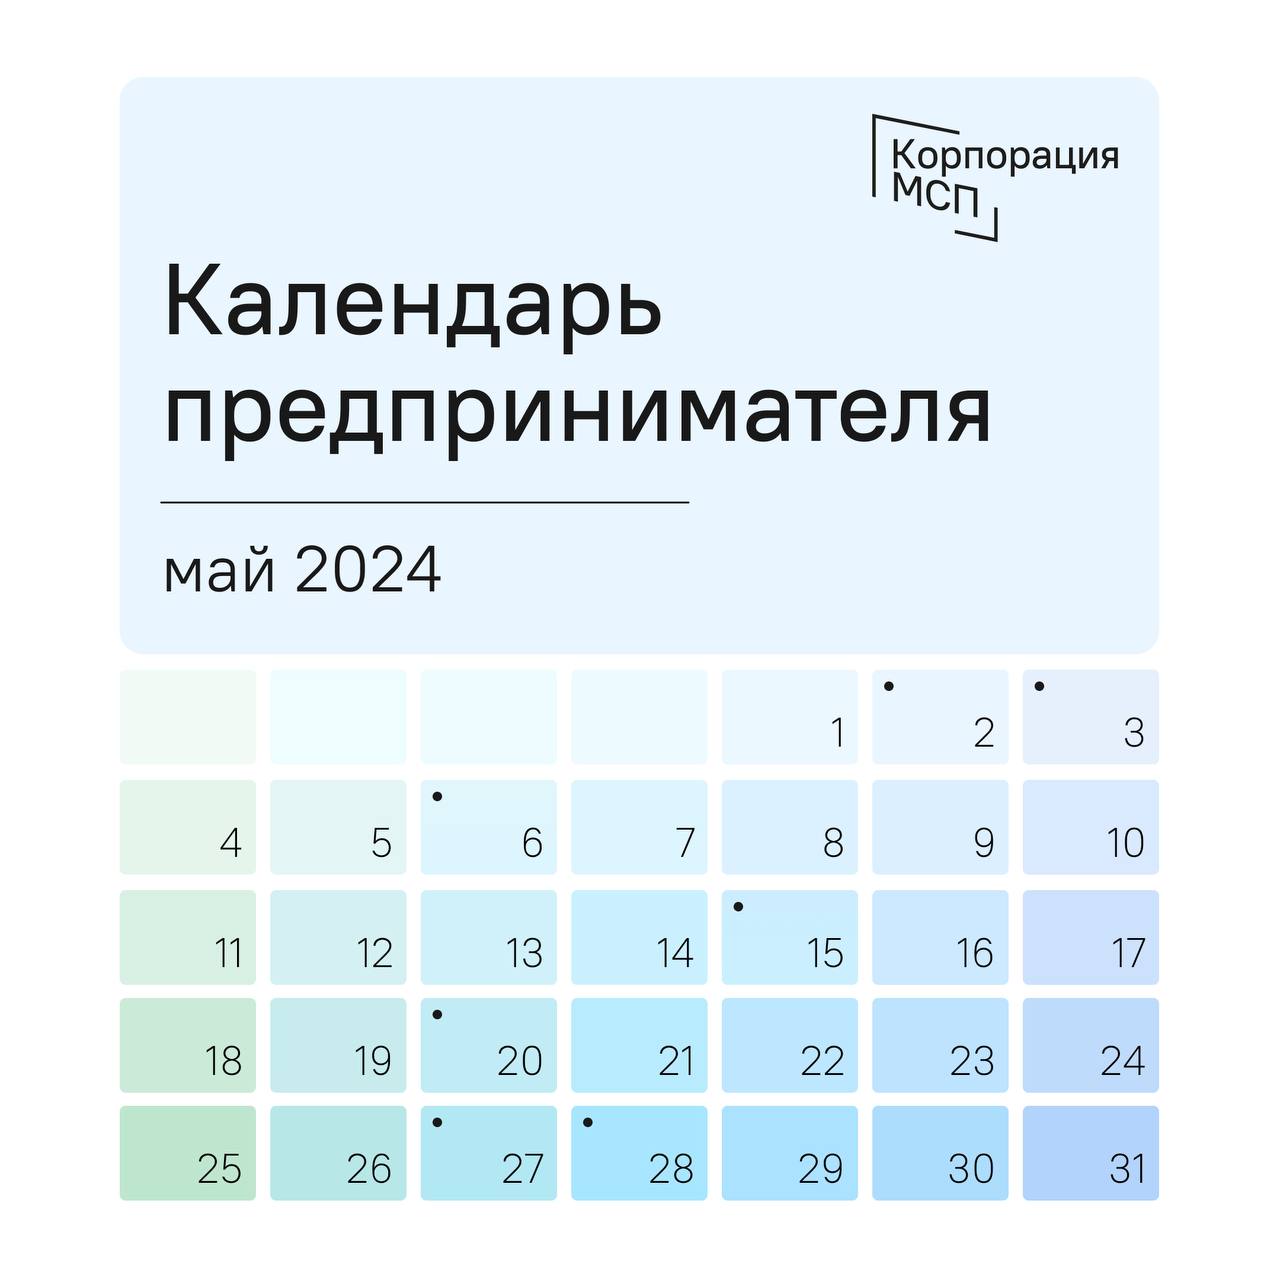 Календарь предпринимателя на май 2024 года.